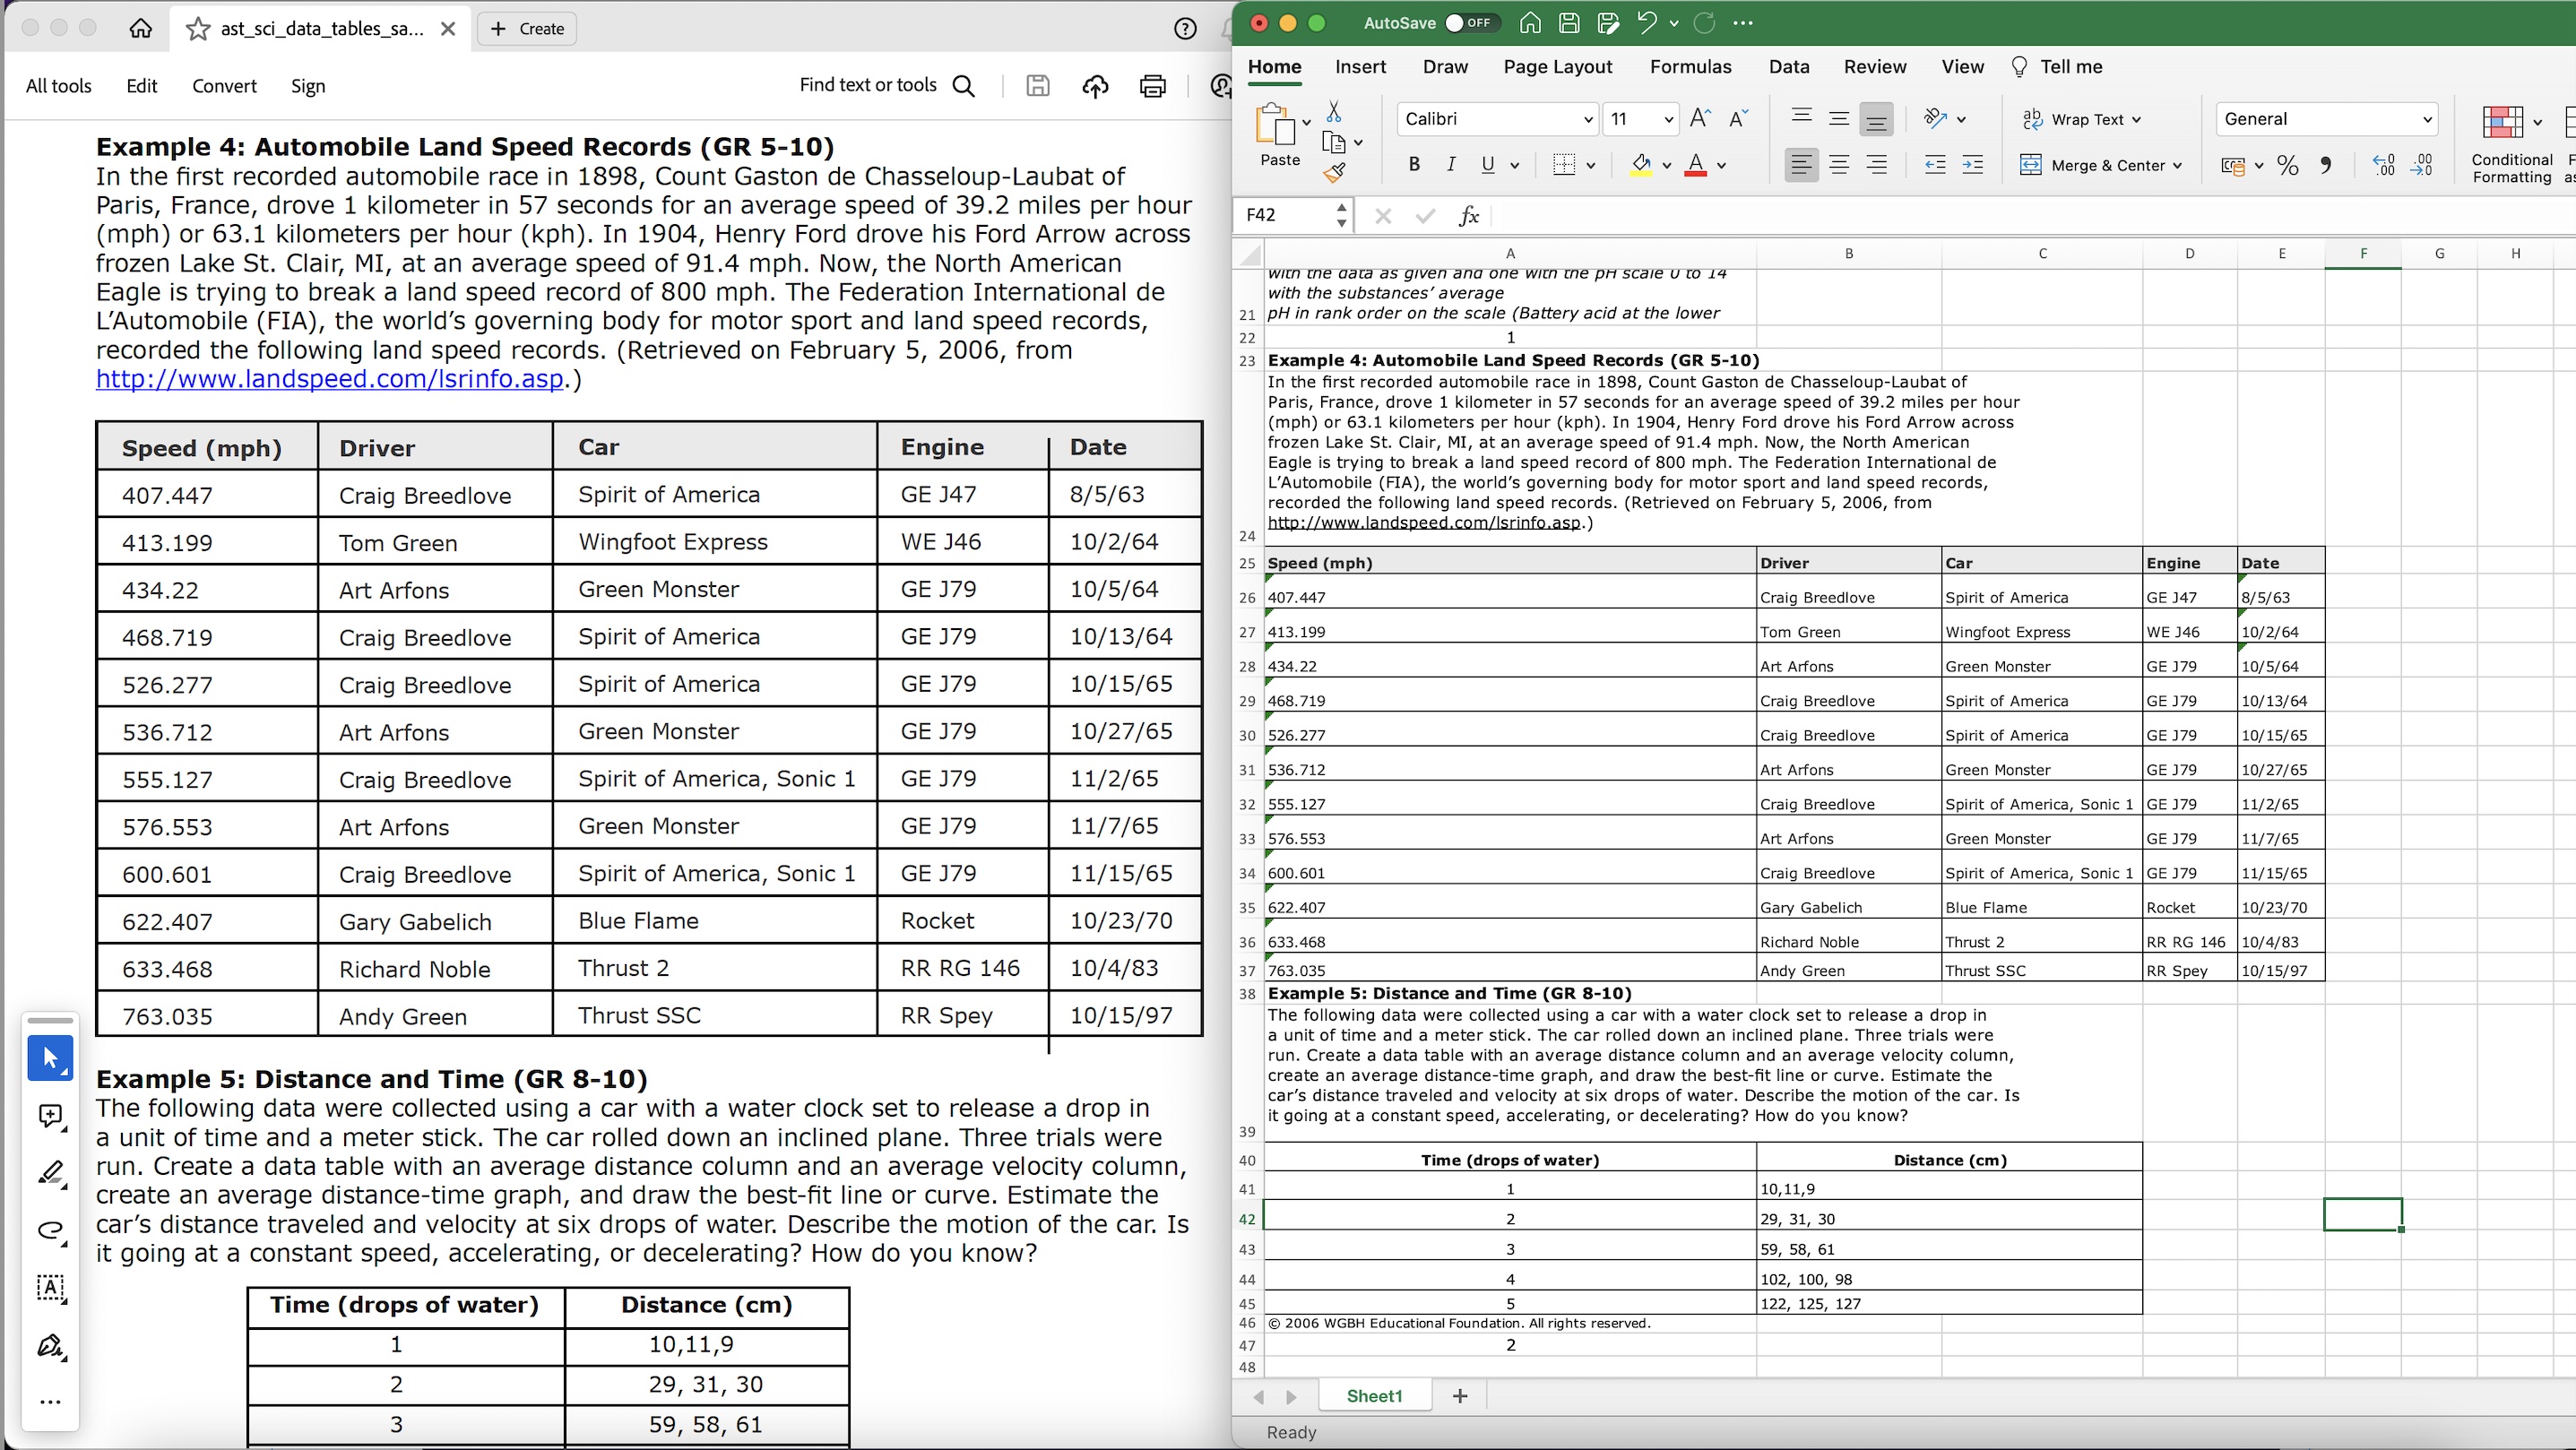 PDF zu Excel